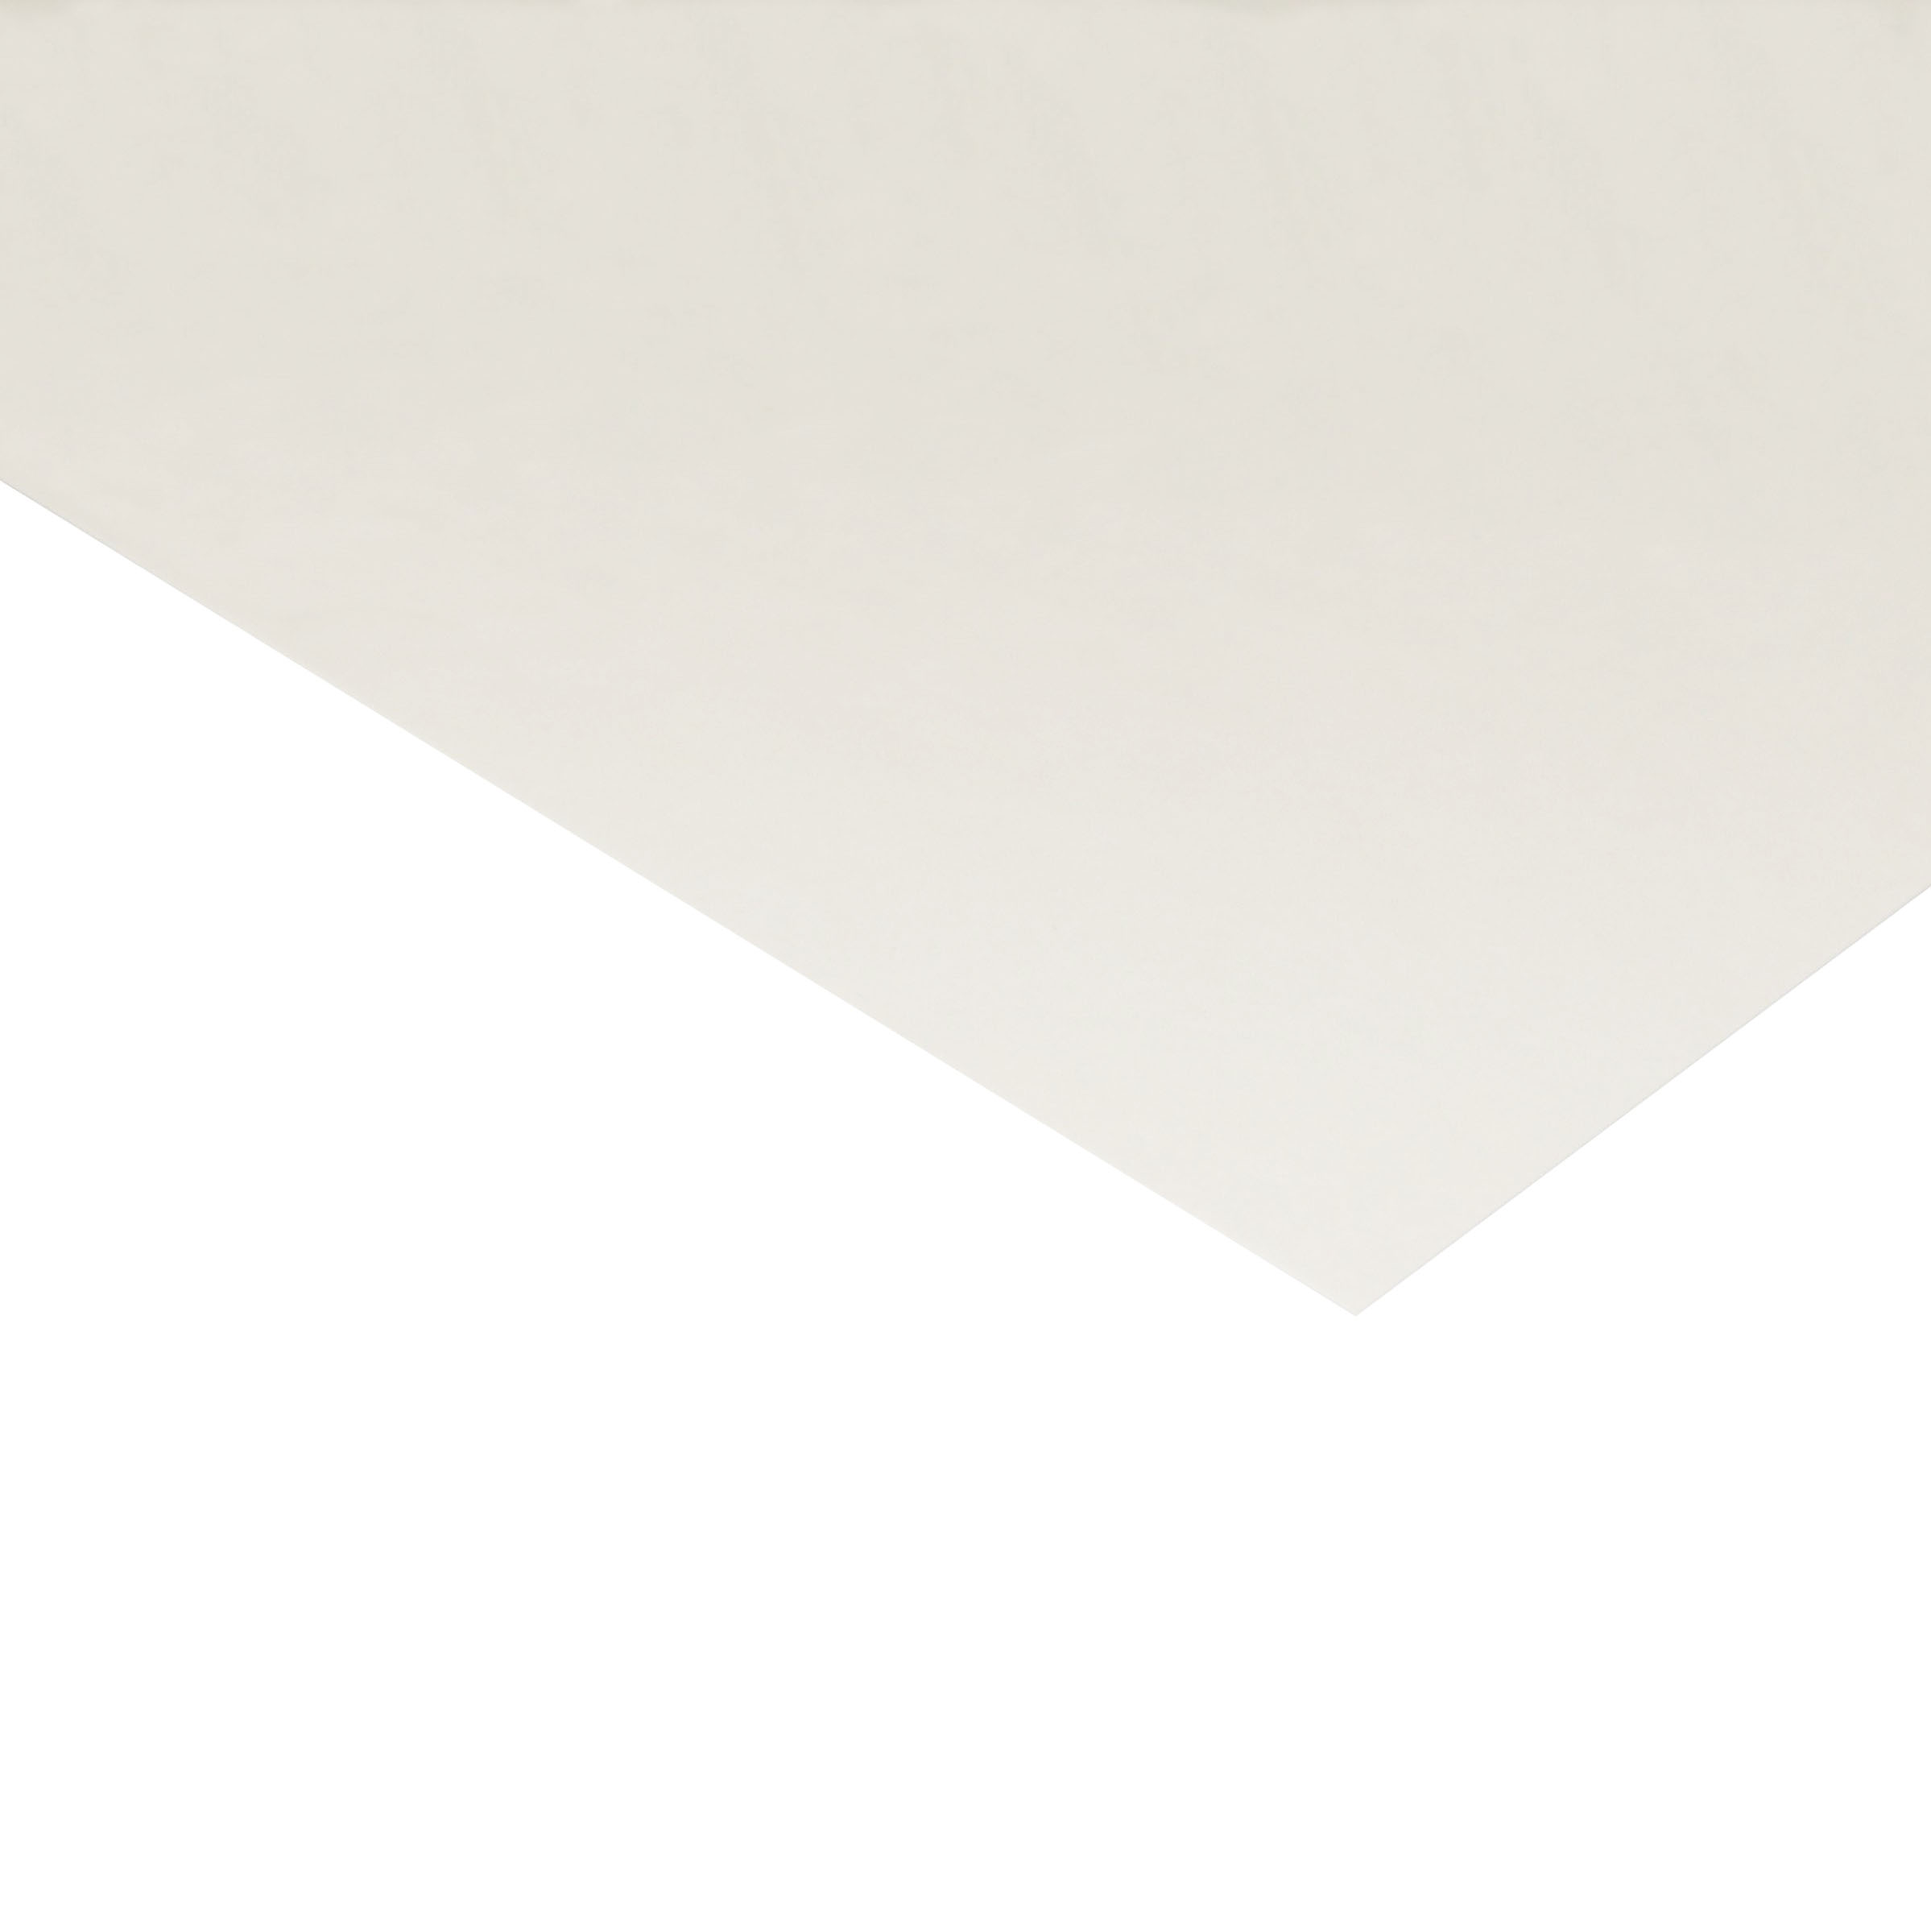 BRAMANTE Bristolkarton naturweiß - 1,02 mm - 65 x 100 cm